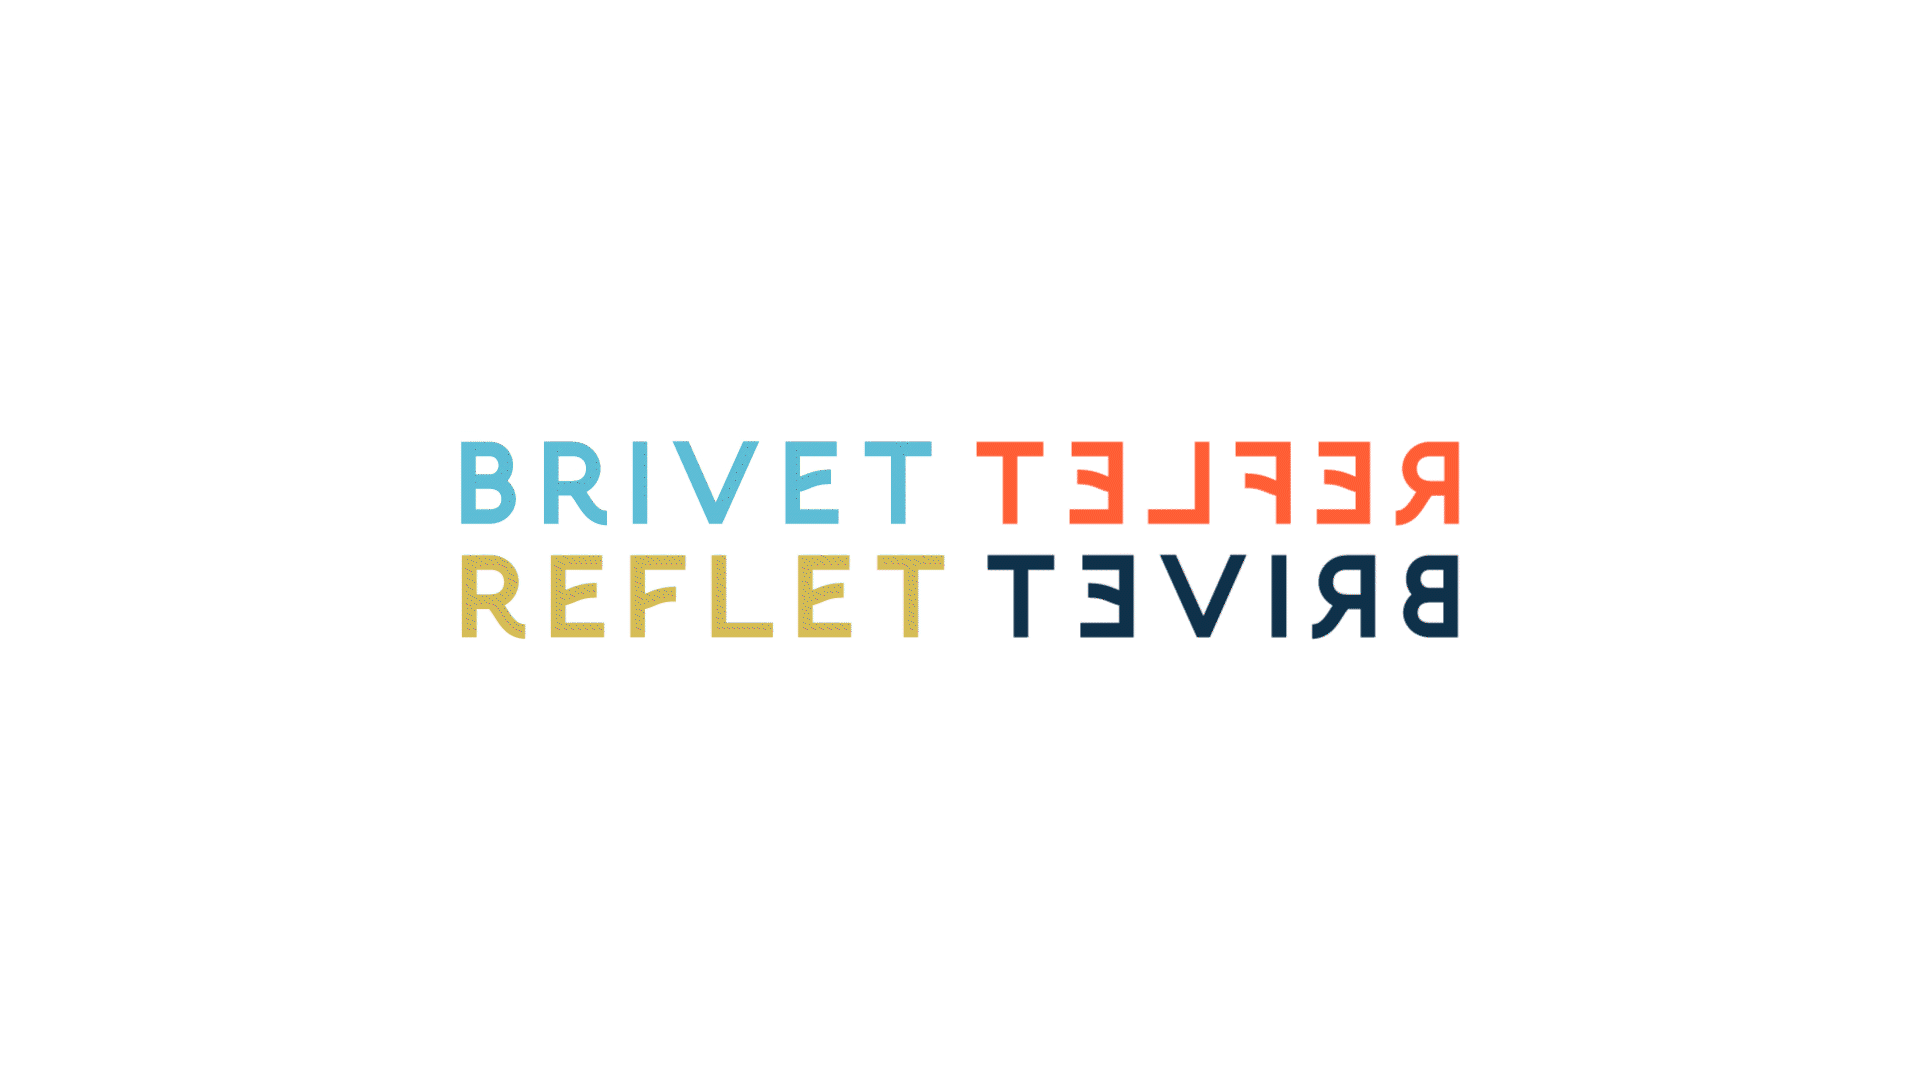 GIF jeu de mouvement typographique fait avec les mots "Brivet" et "Reflet"